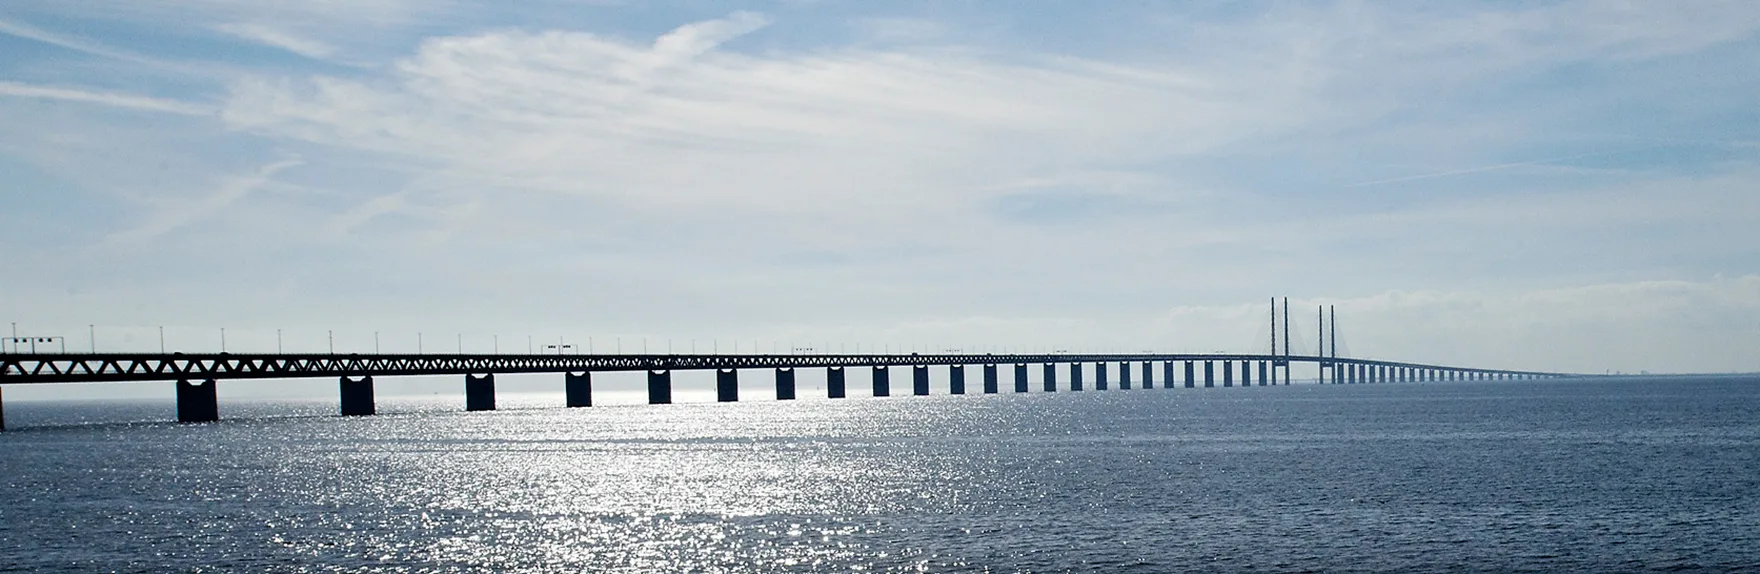 The Øresund bridge in blue tones.